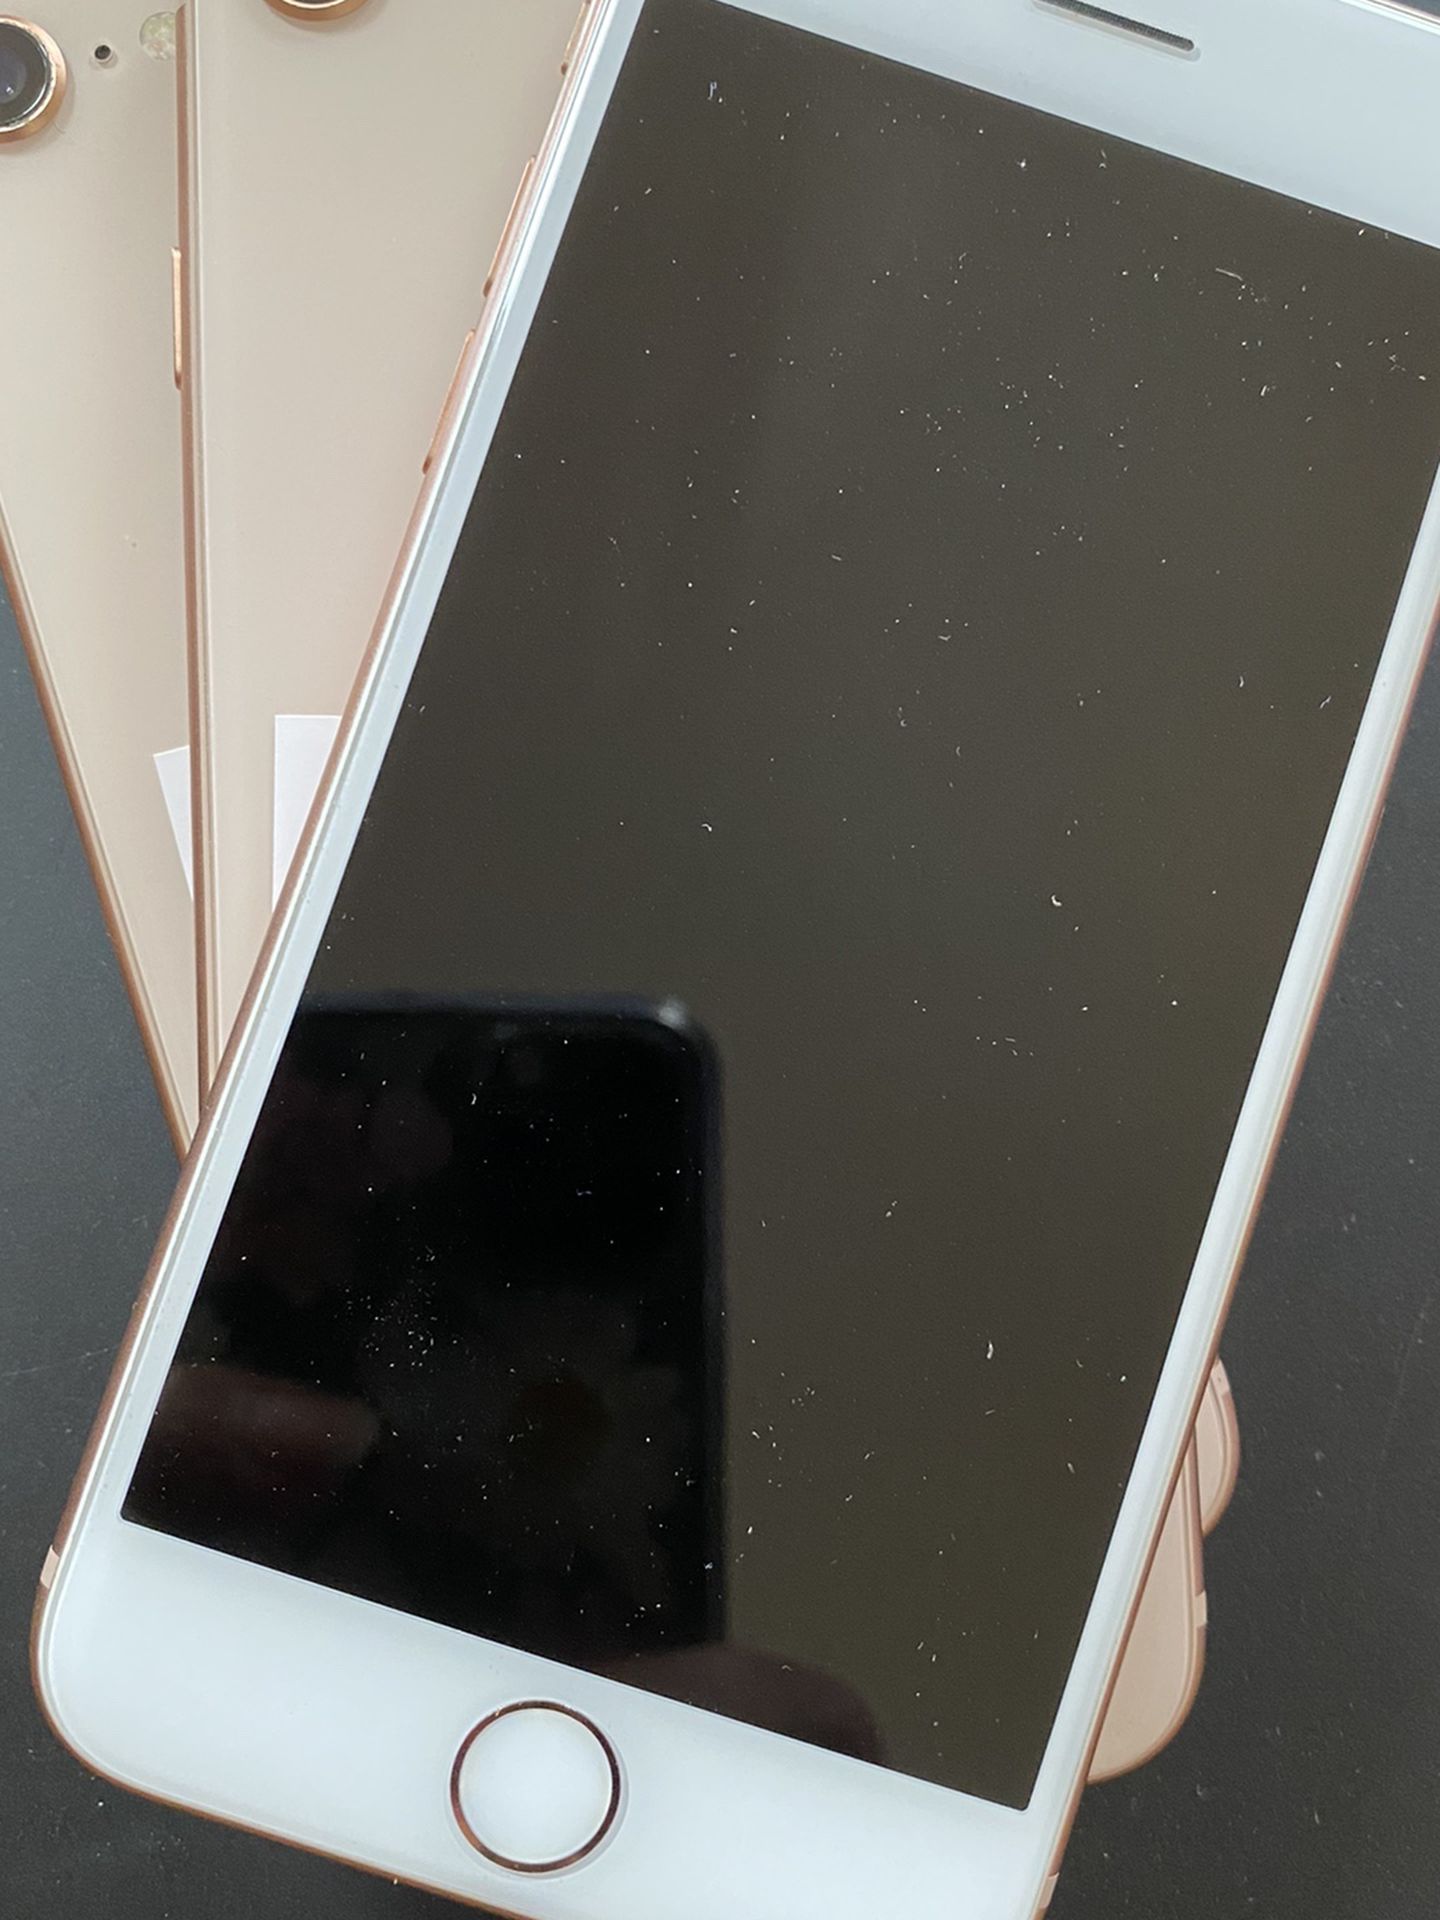 Factory unlocked apple iphone 8 64 gb, store warranty $230 each